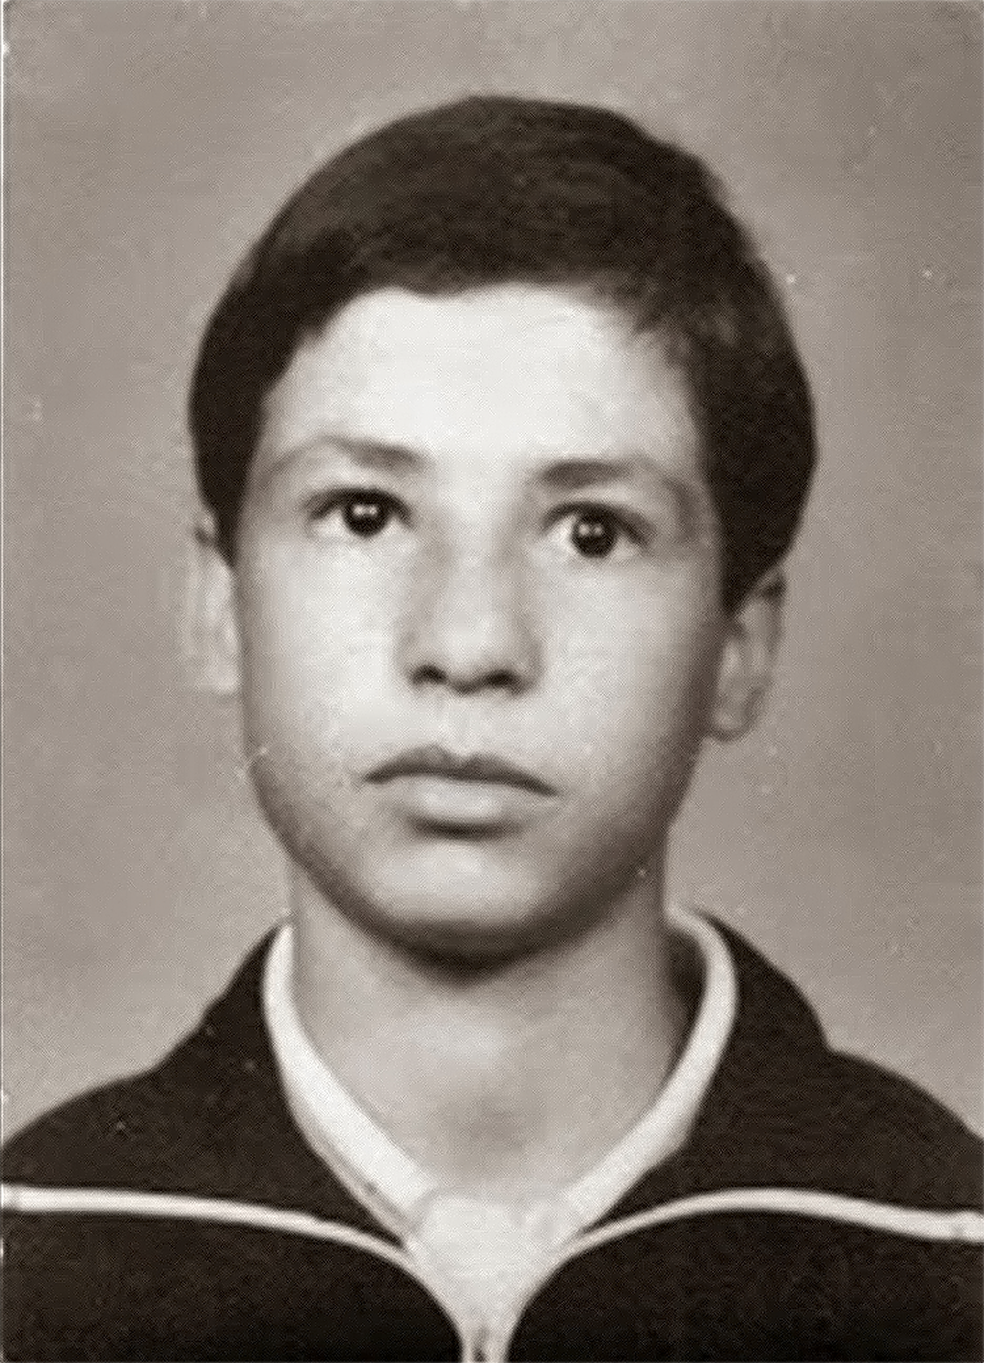 Escoteiro Marco Aurélio Simon desapareceu aos 15 anos em 1985 no Pico dos Marins em Piquete (SP) — Foto: Arquivo pessoal